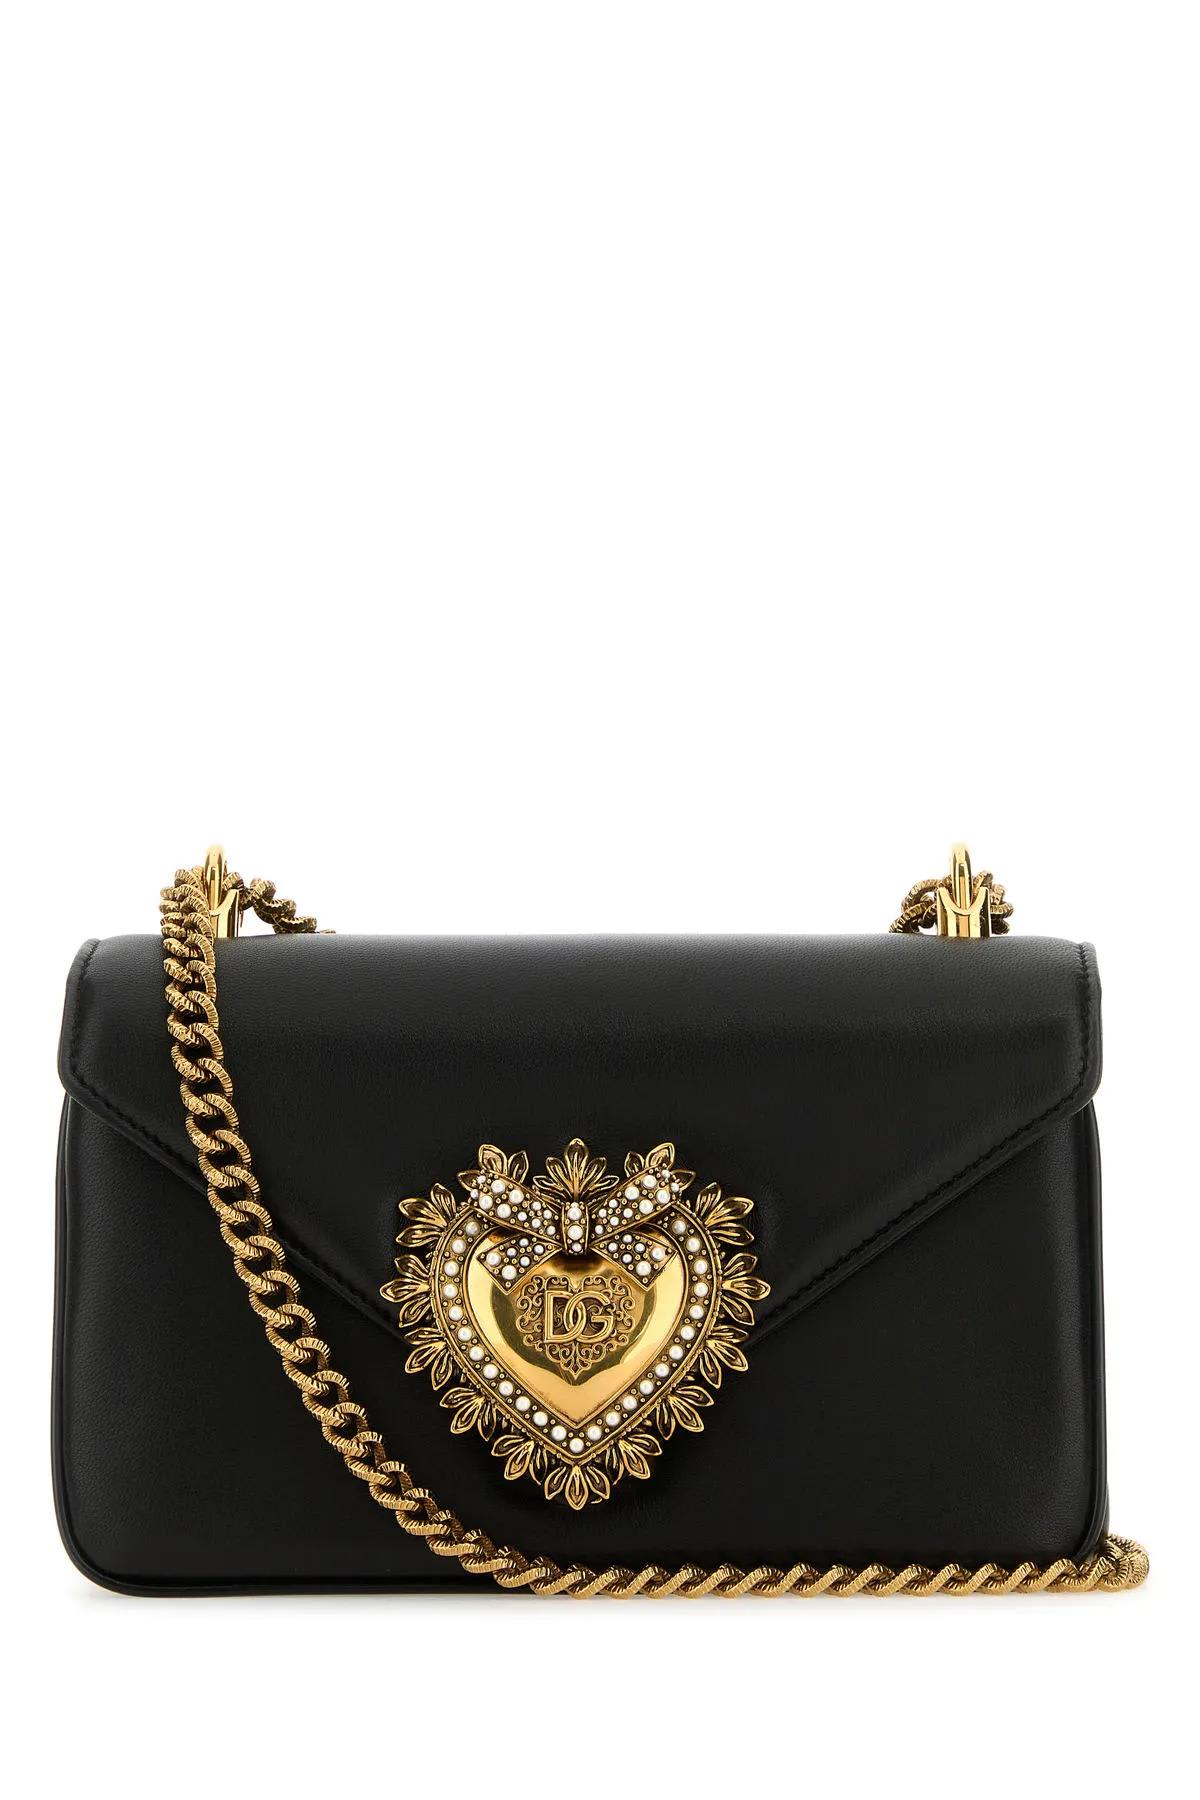 Dolce & Gabbana Black Nappa Leather Devotion Shoulder Bag